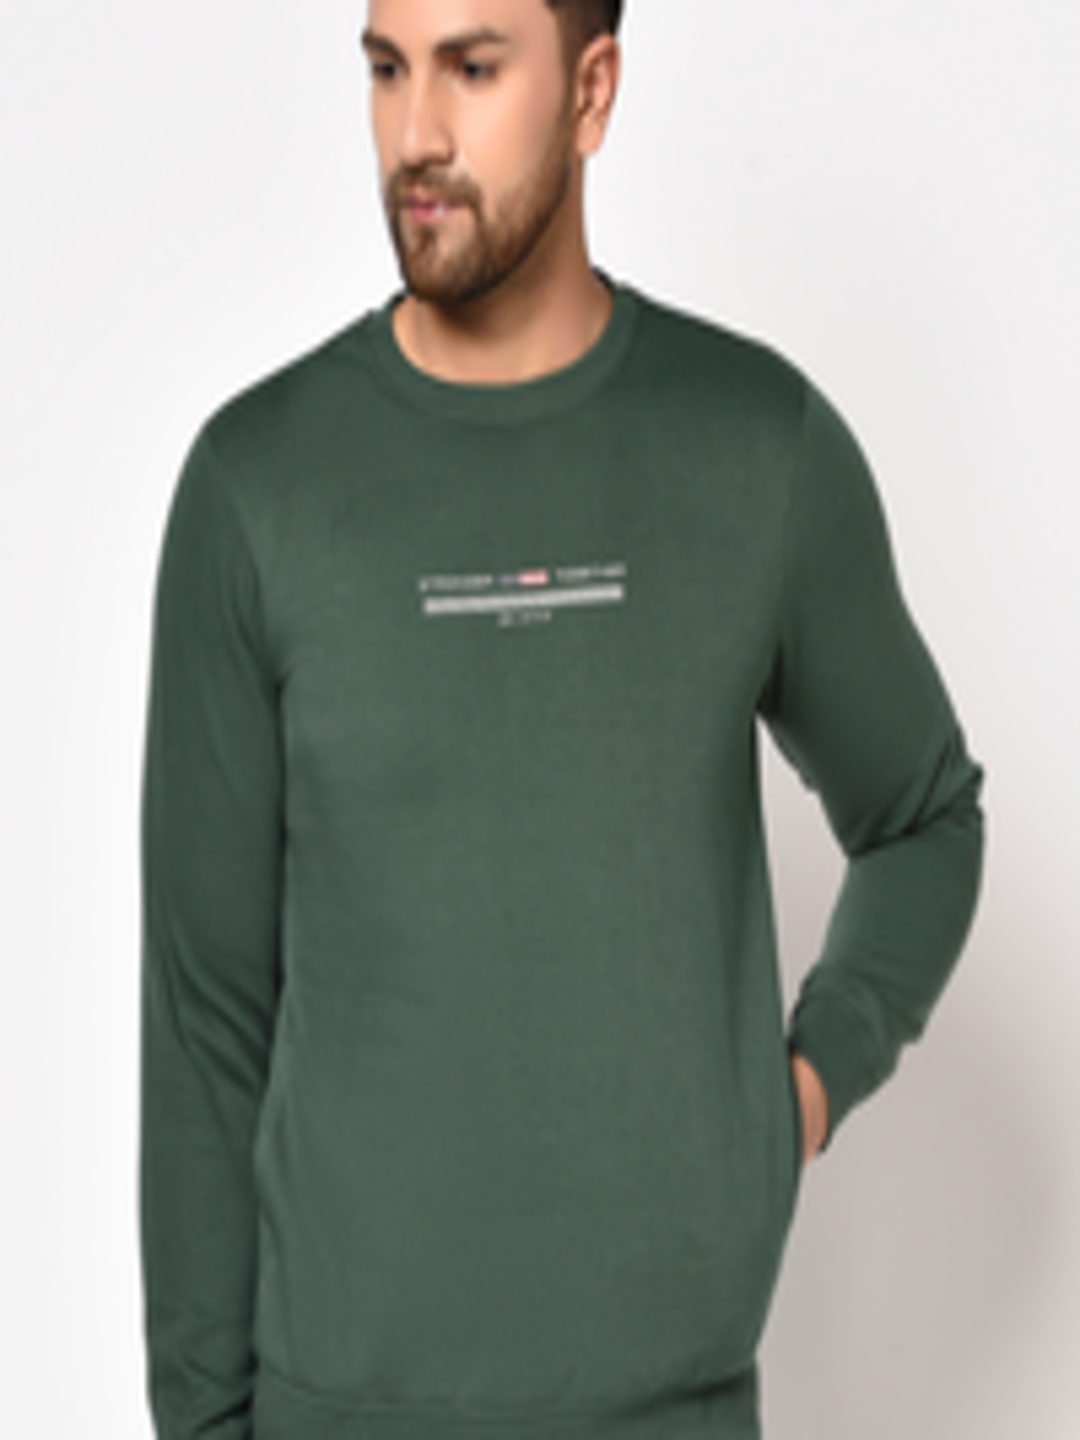 Buy Octave Men Olive Green Solid Sweatshirt - Sweatshirts for Men ...